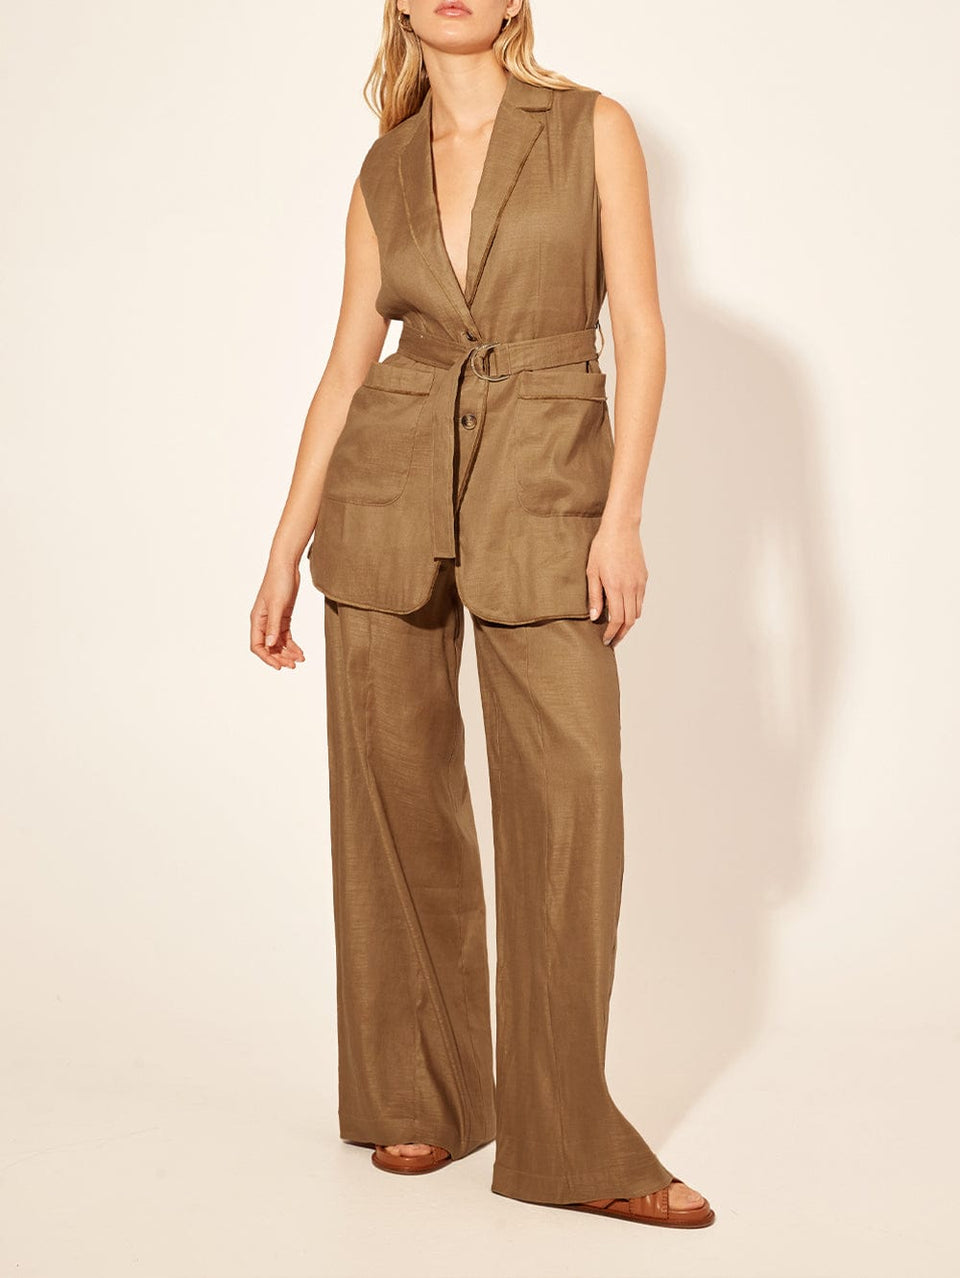 Penelope Pant KIVARI | Model wears brown tailored pant